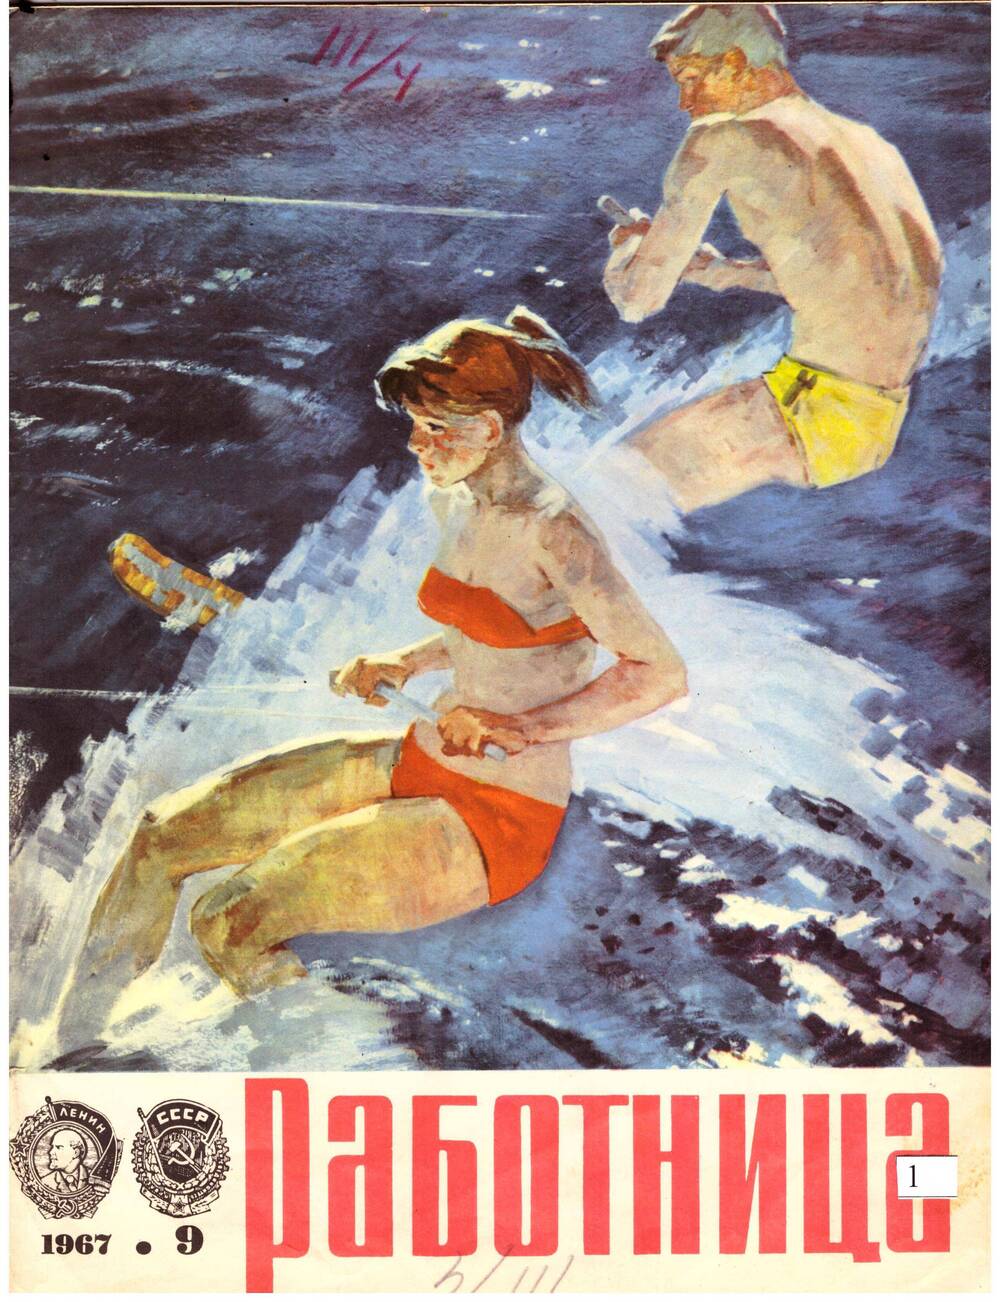 Журнал Работница №9 - 1967г. со статьей М. Павловой Дом на Сердобольской.